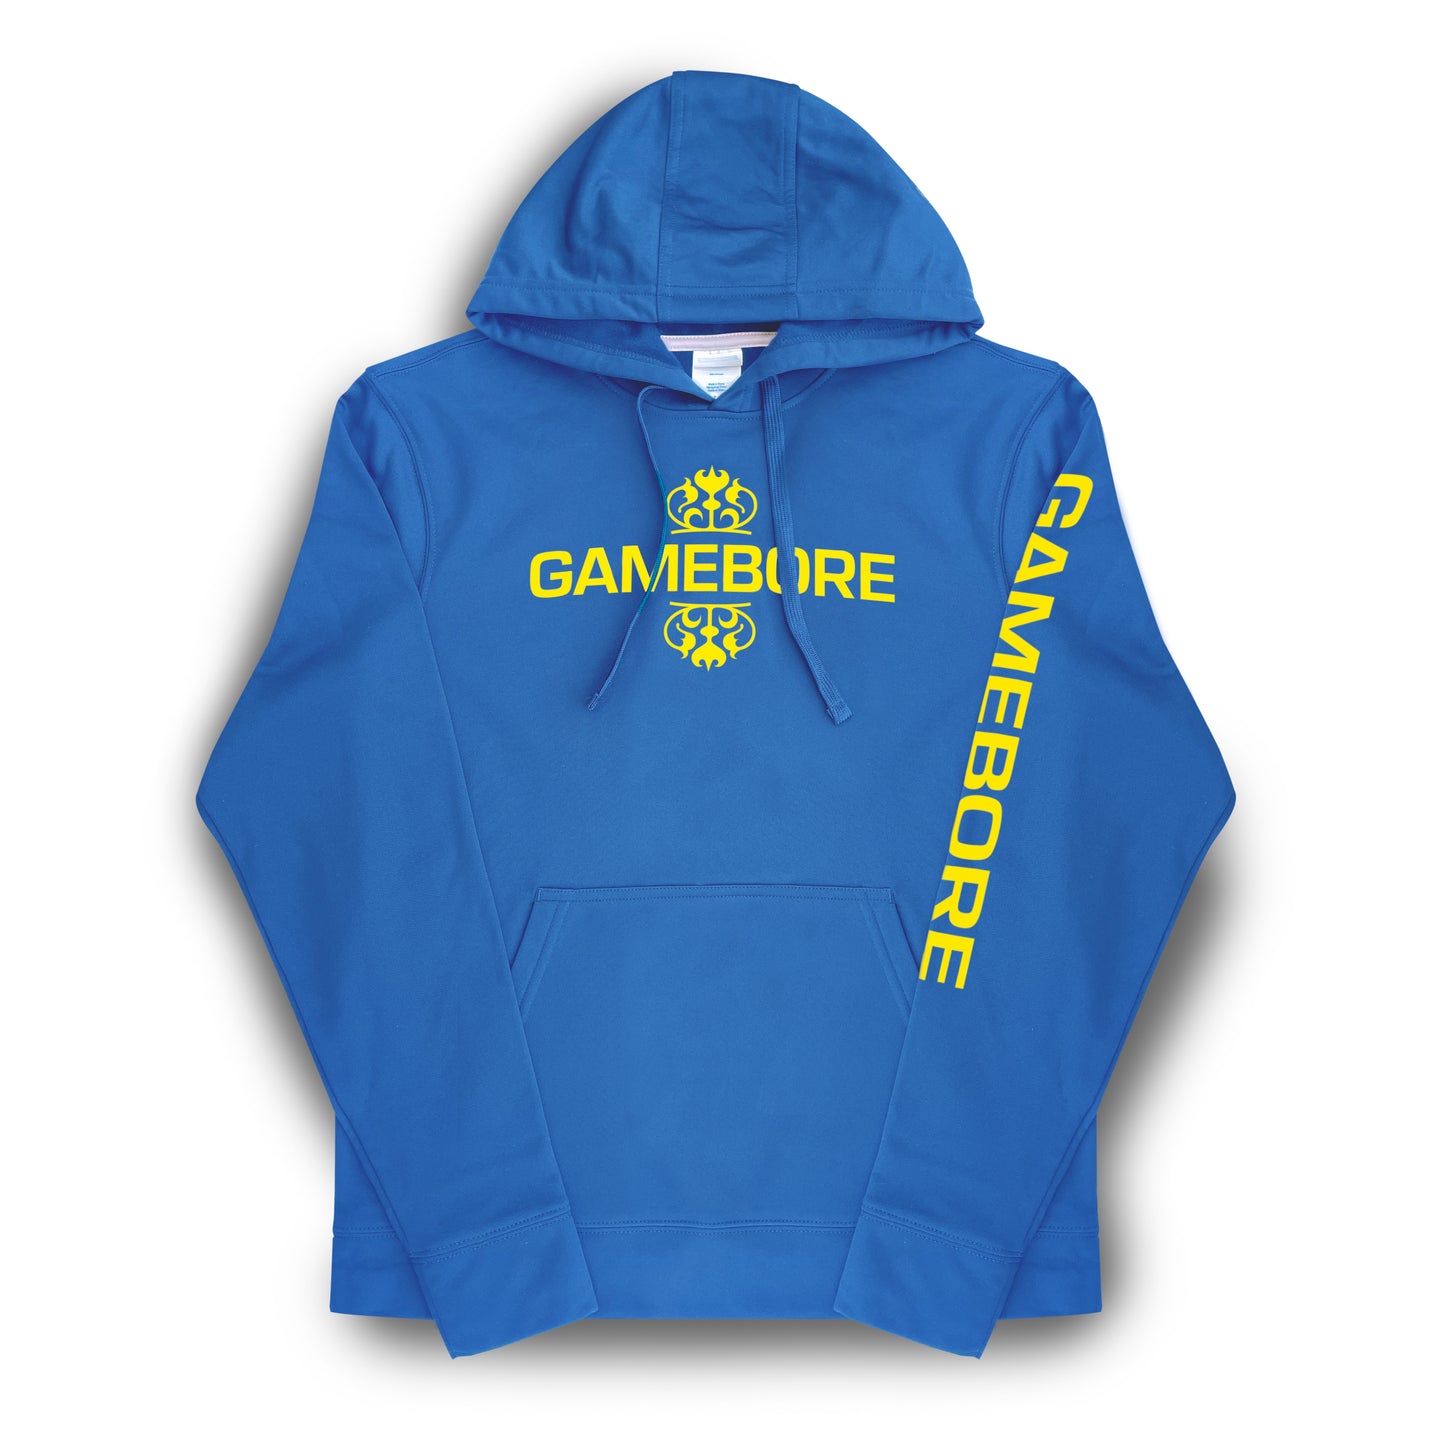 Gamebore Sweatshirt